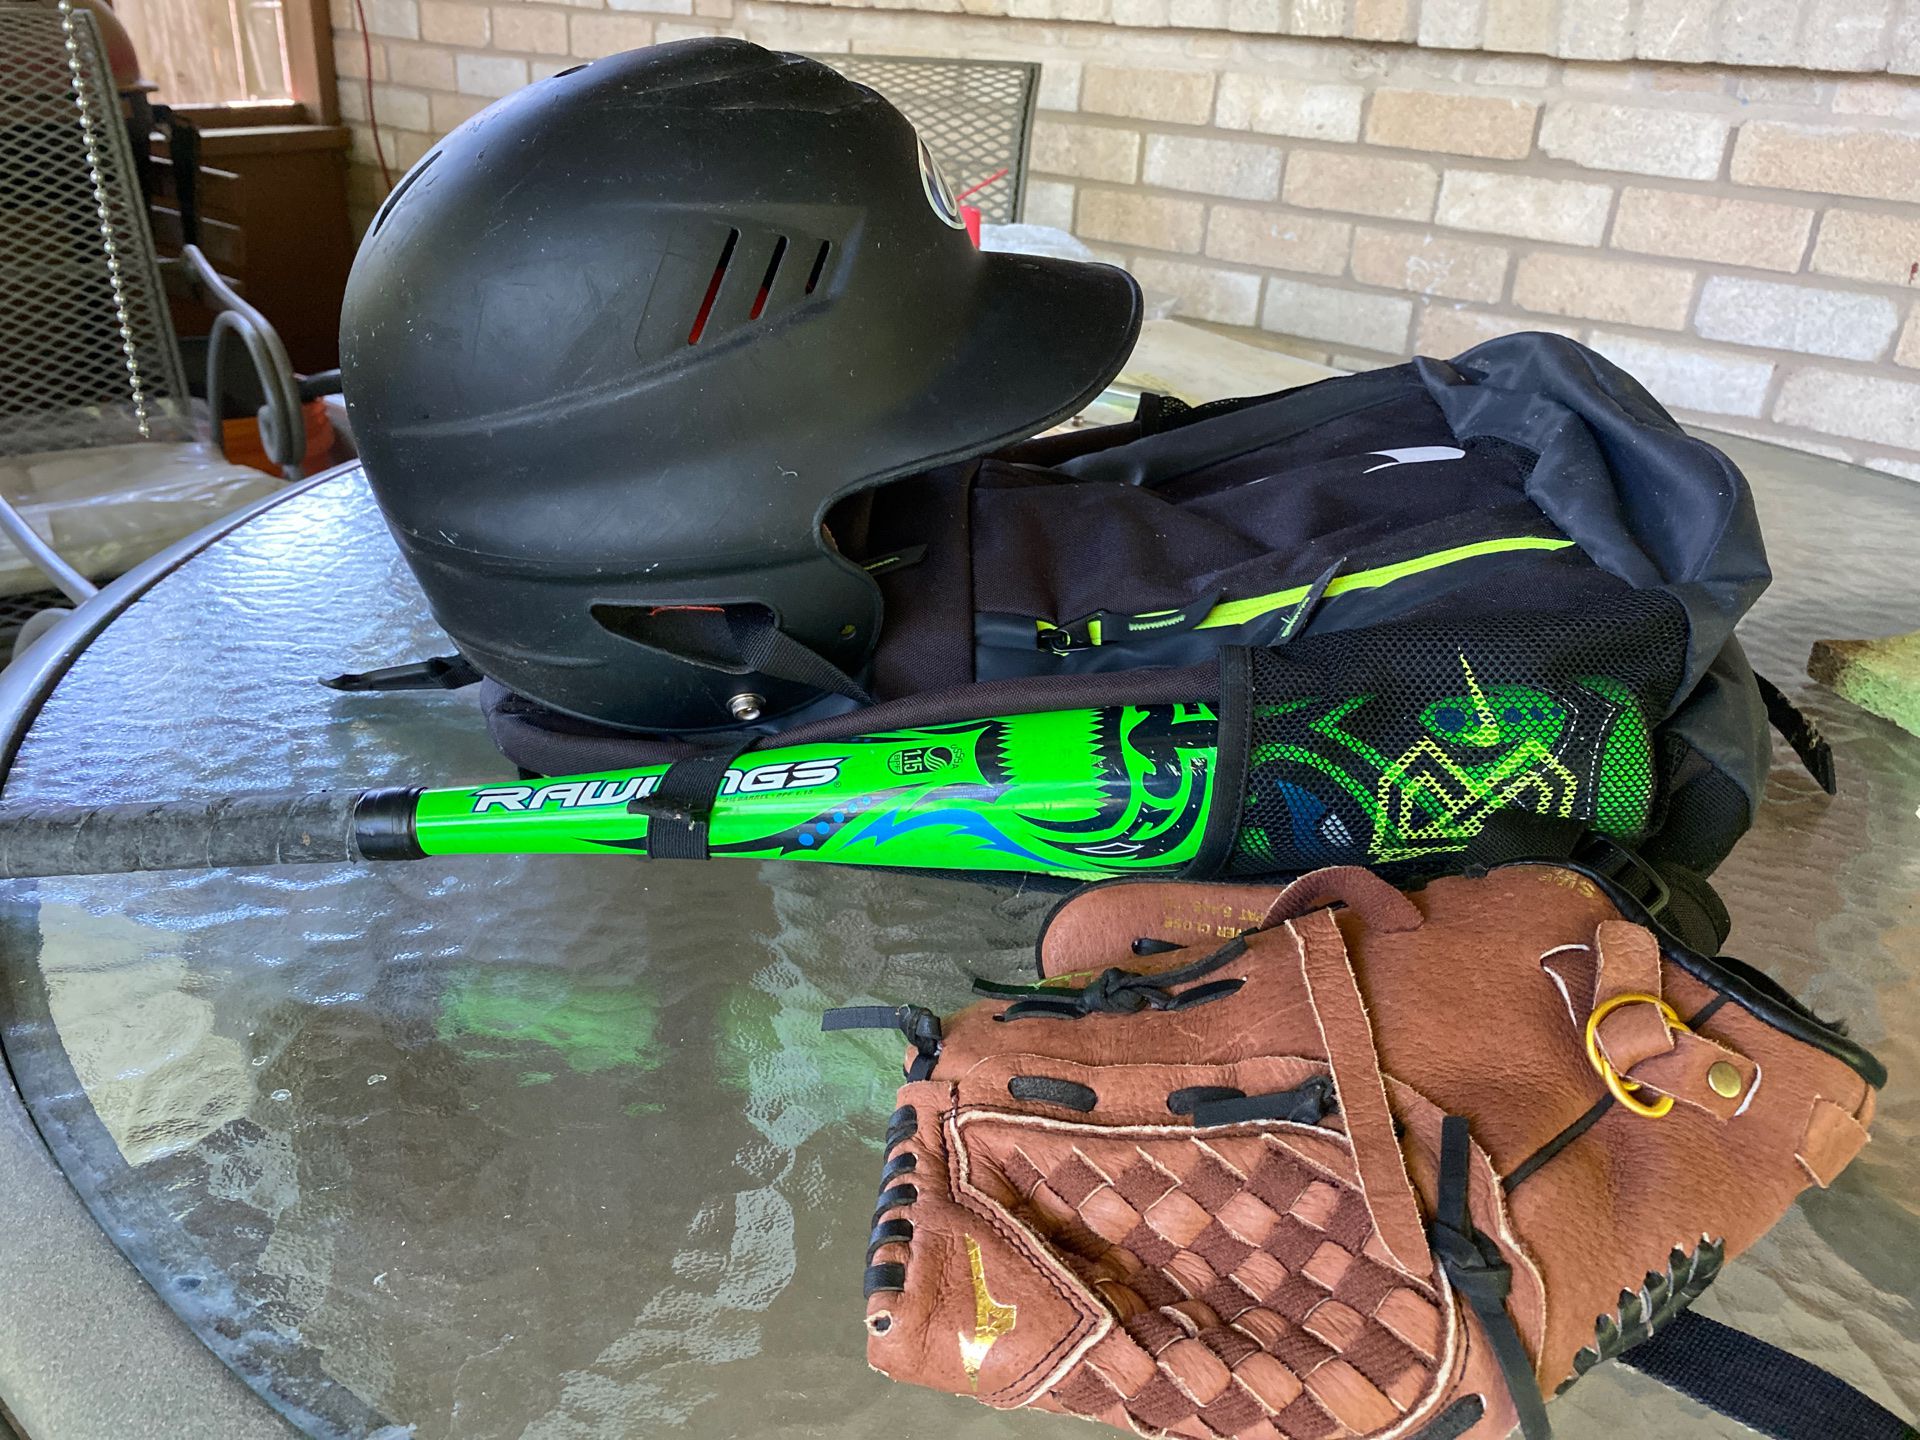 Baseball gear